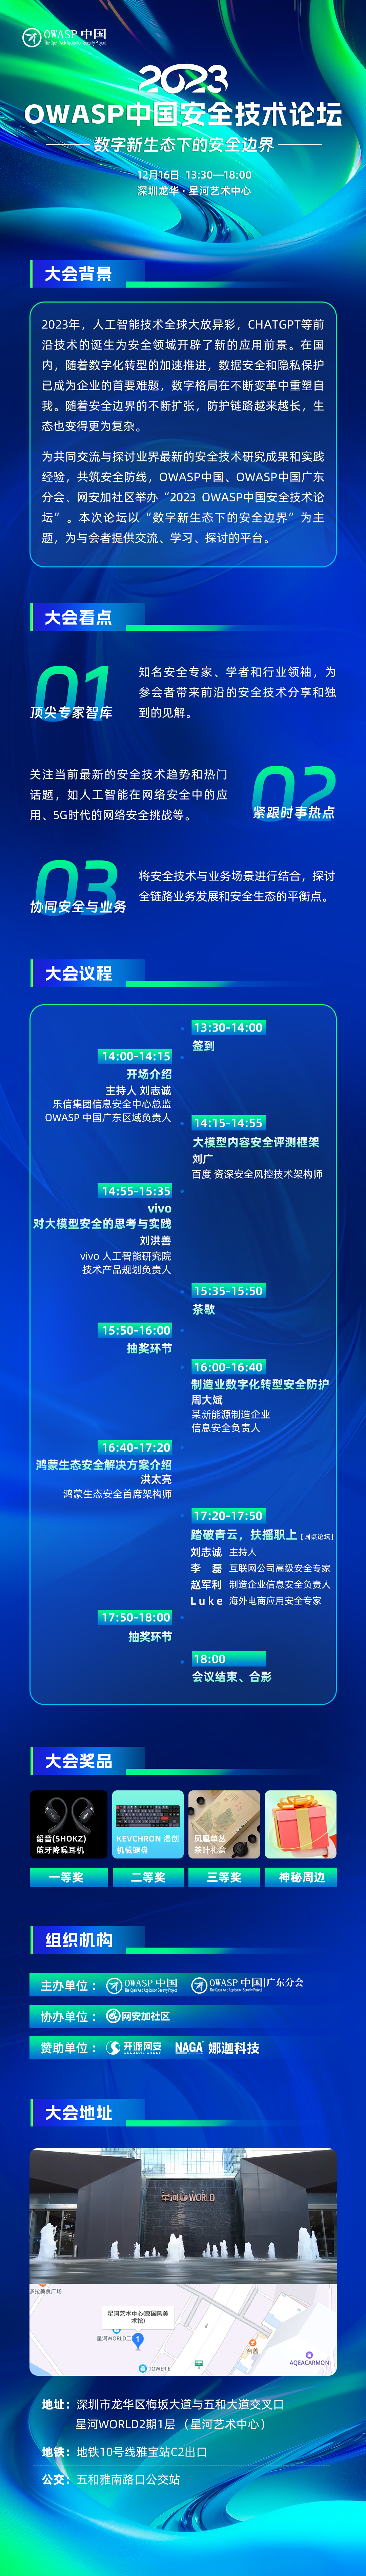 2023 OWASP中国安全技术论坛.jpg